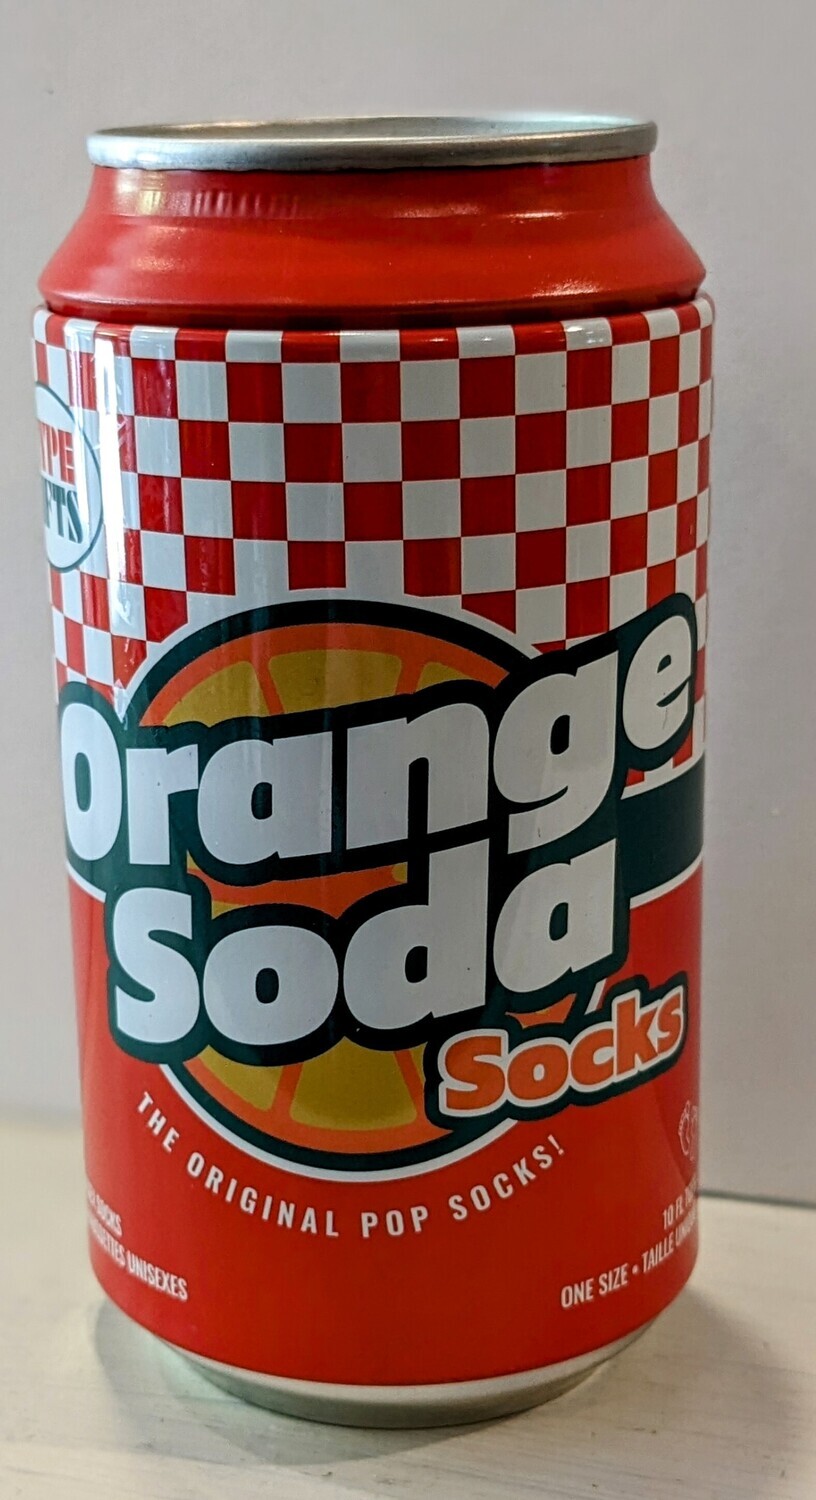 Orange Soda socks